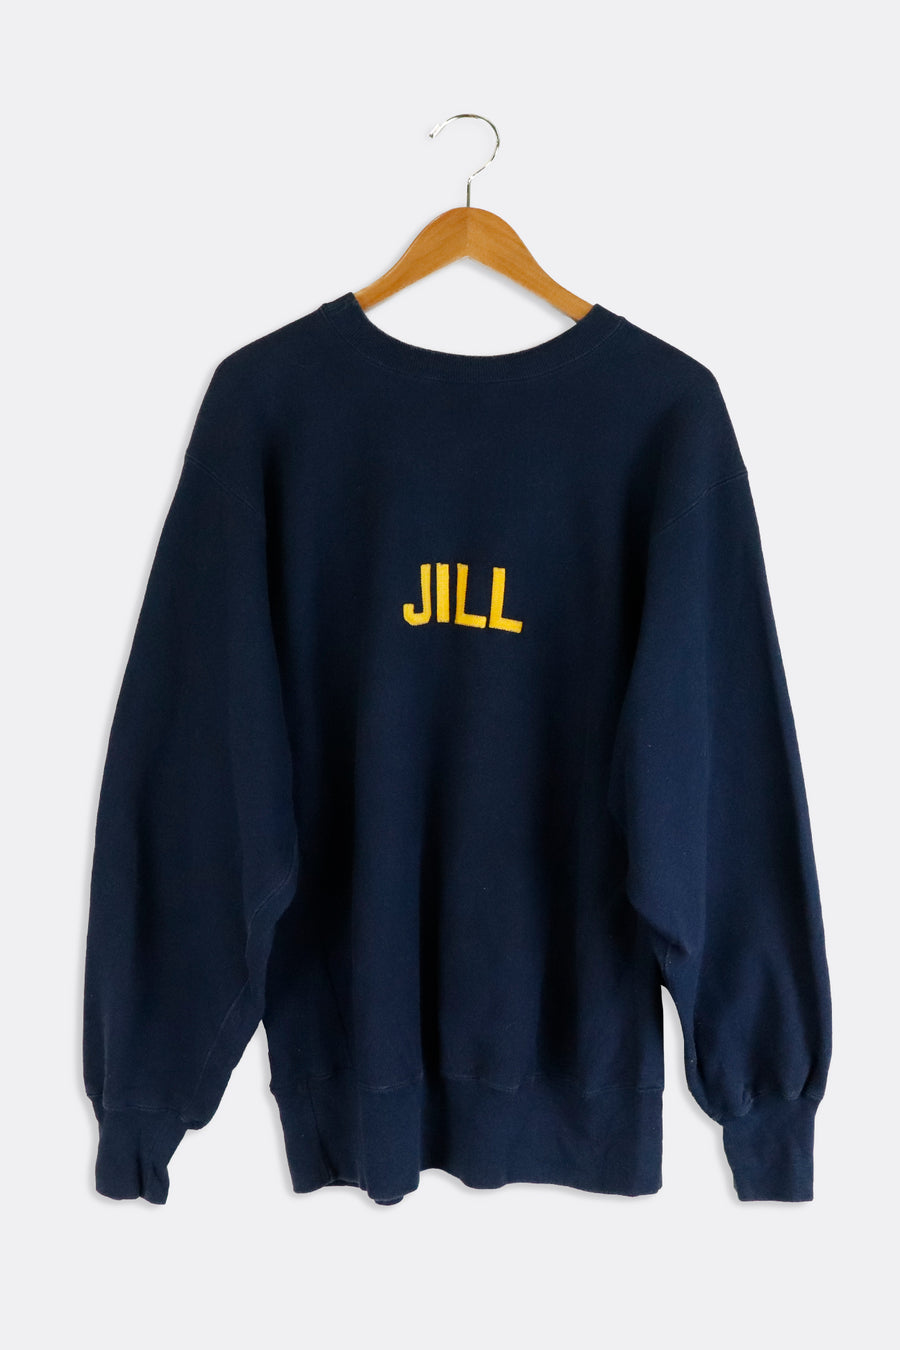 Vintage ZBT Fraternity Sweatshirt Sz XL